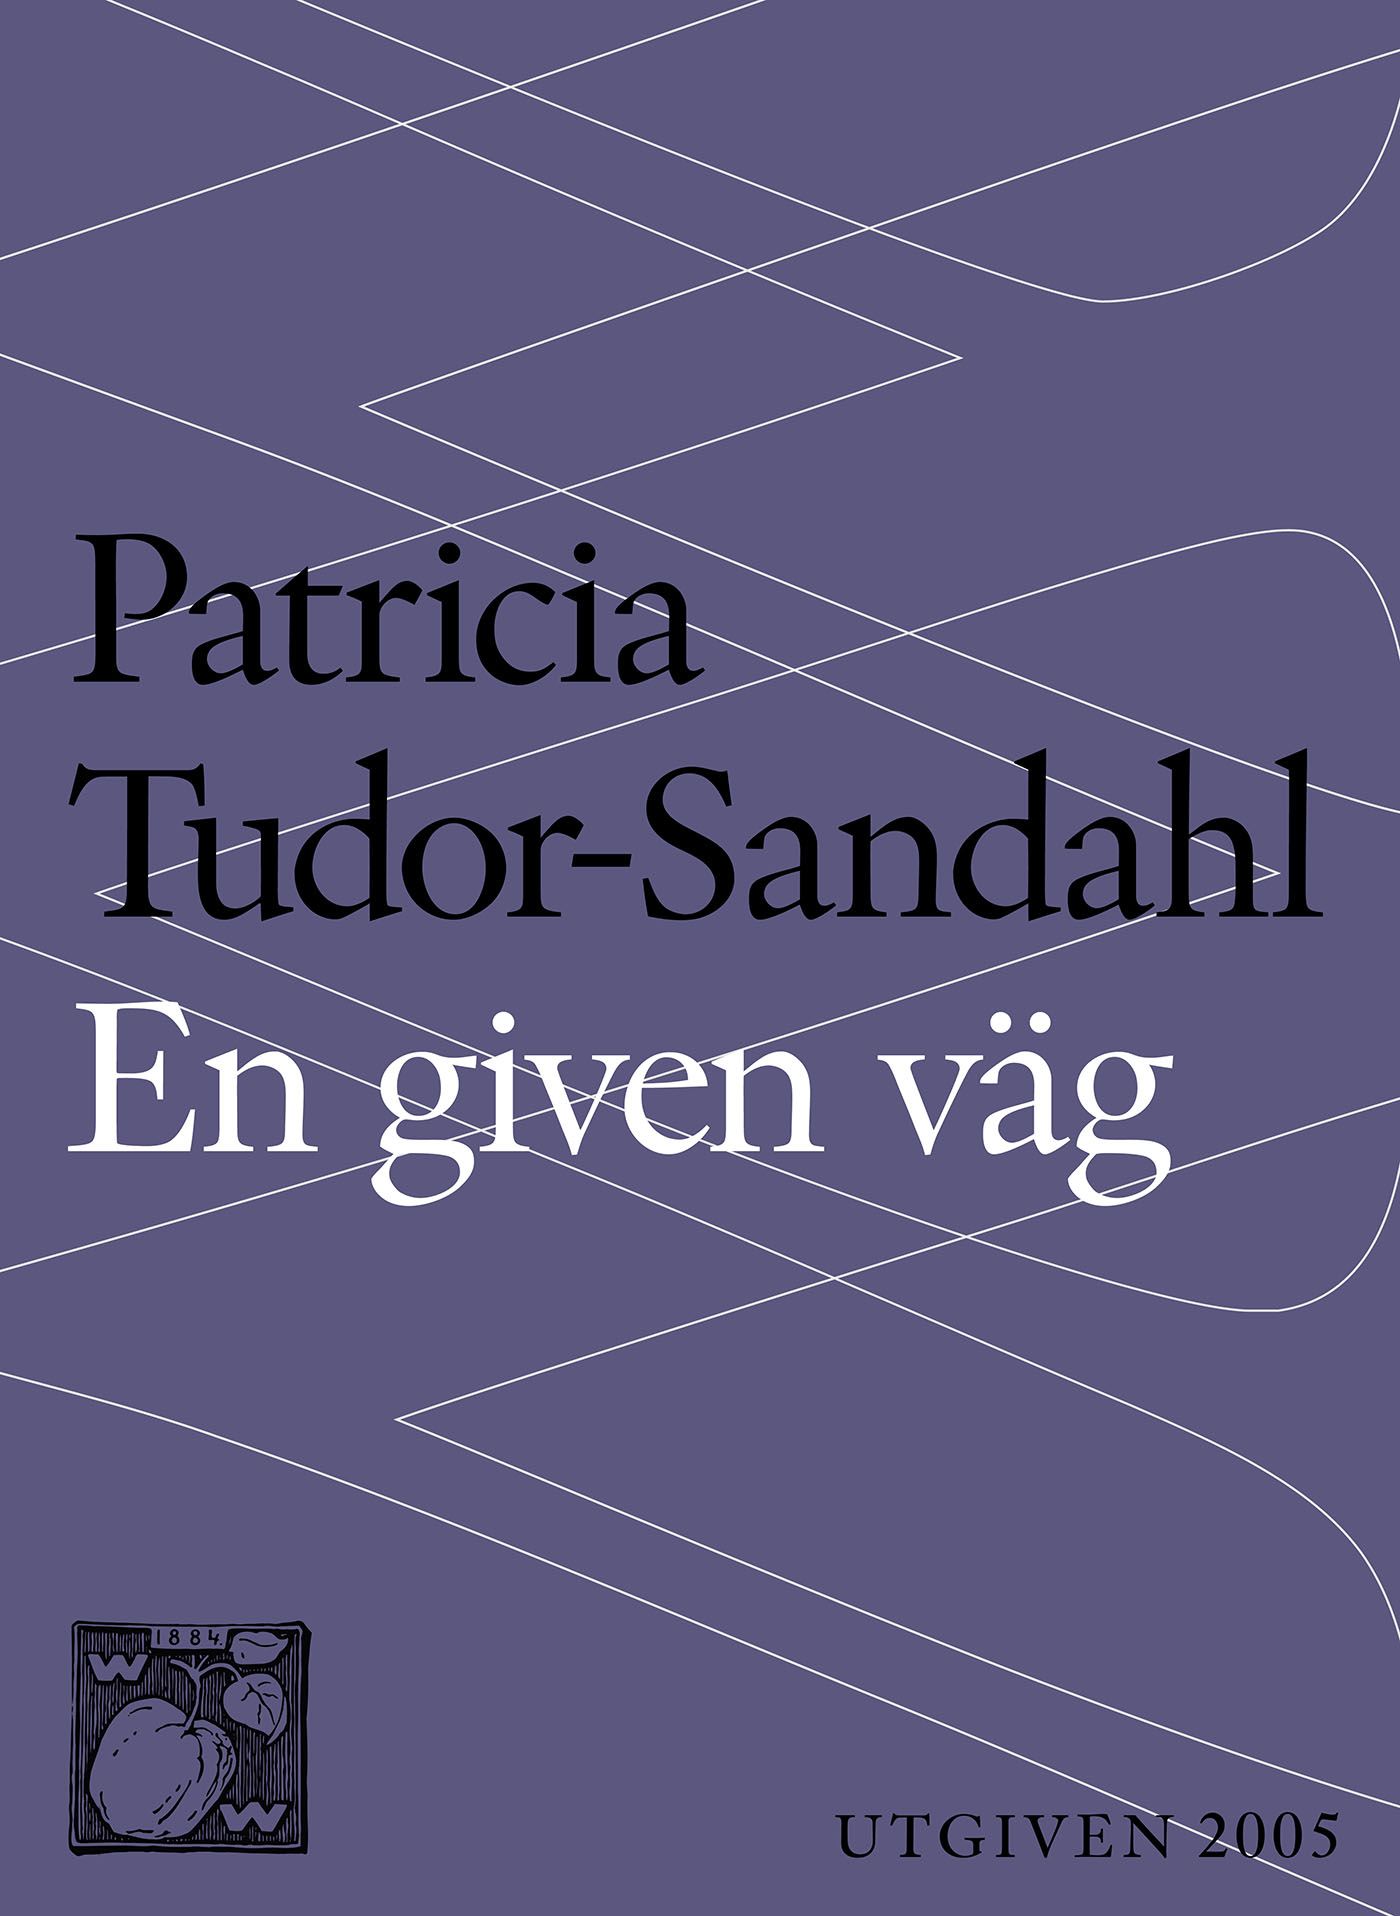 En given väg, e-bog af Patricia Tudor-Sandahl